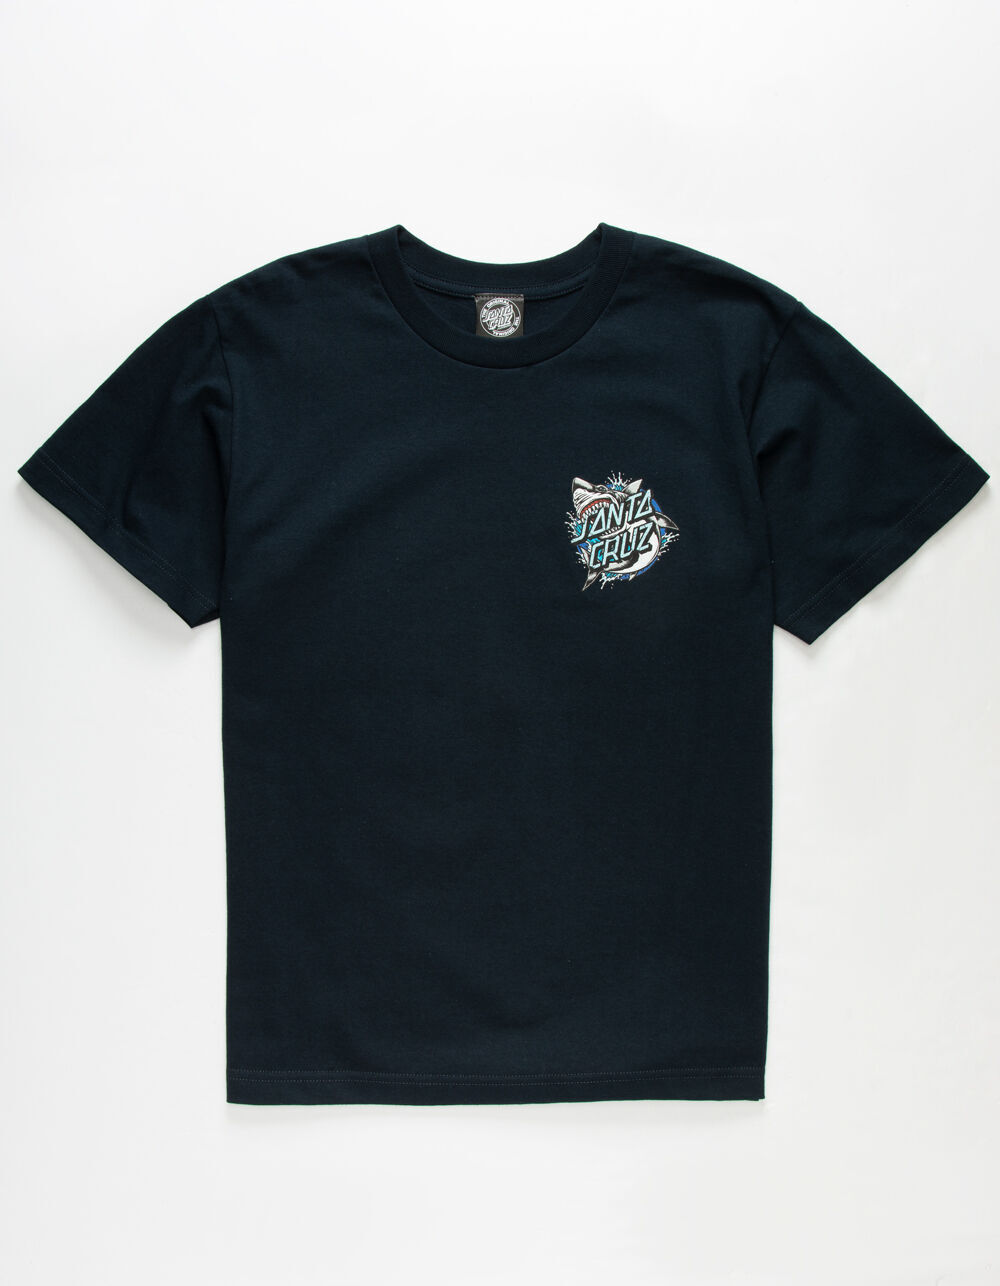 SANTA CRUZ Shark Dot Navy Boys T-Shirt - NAVY | Tillys